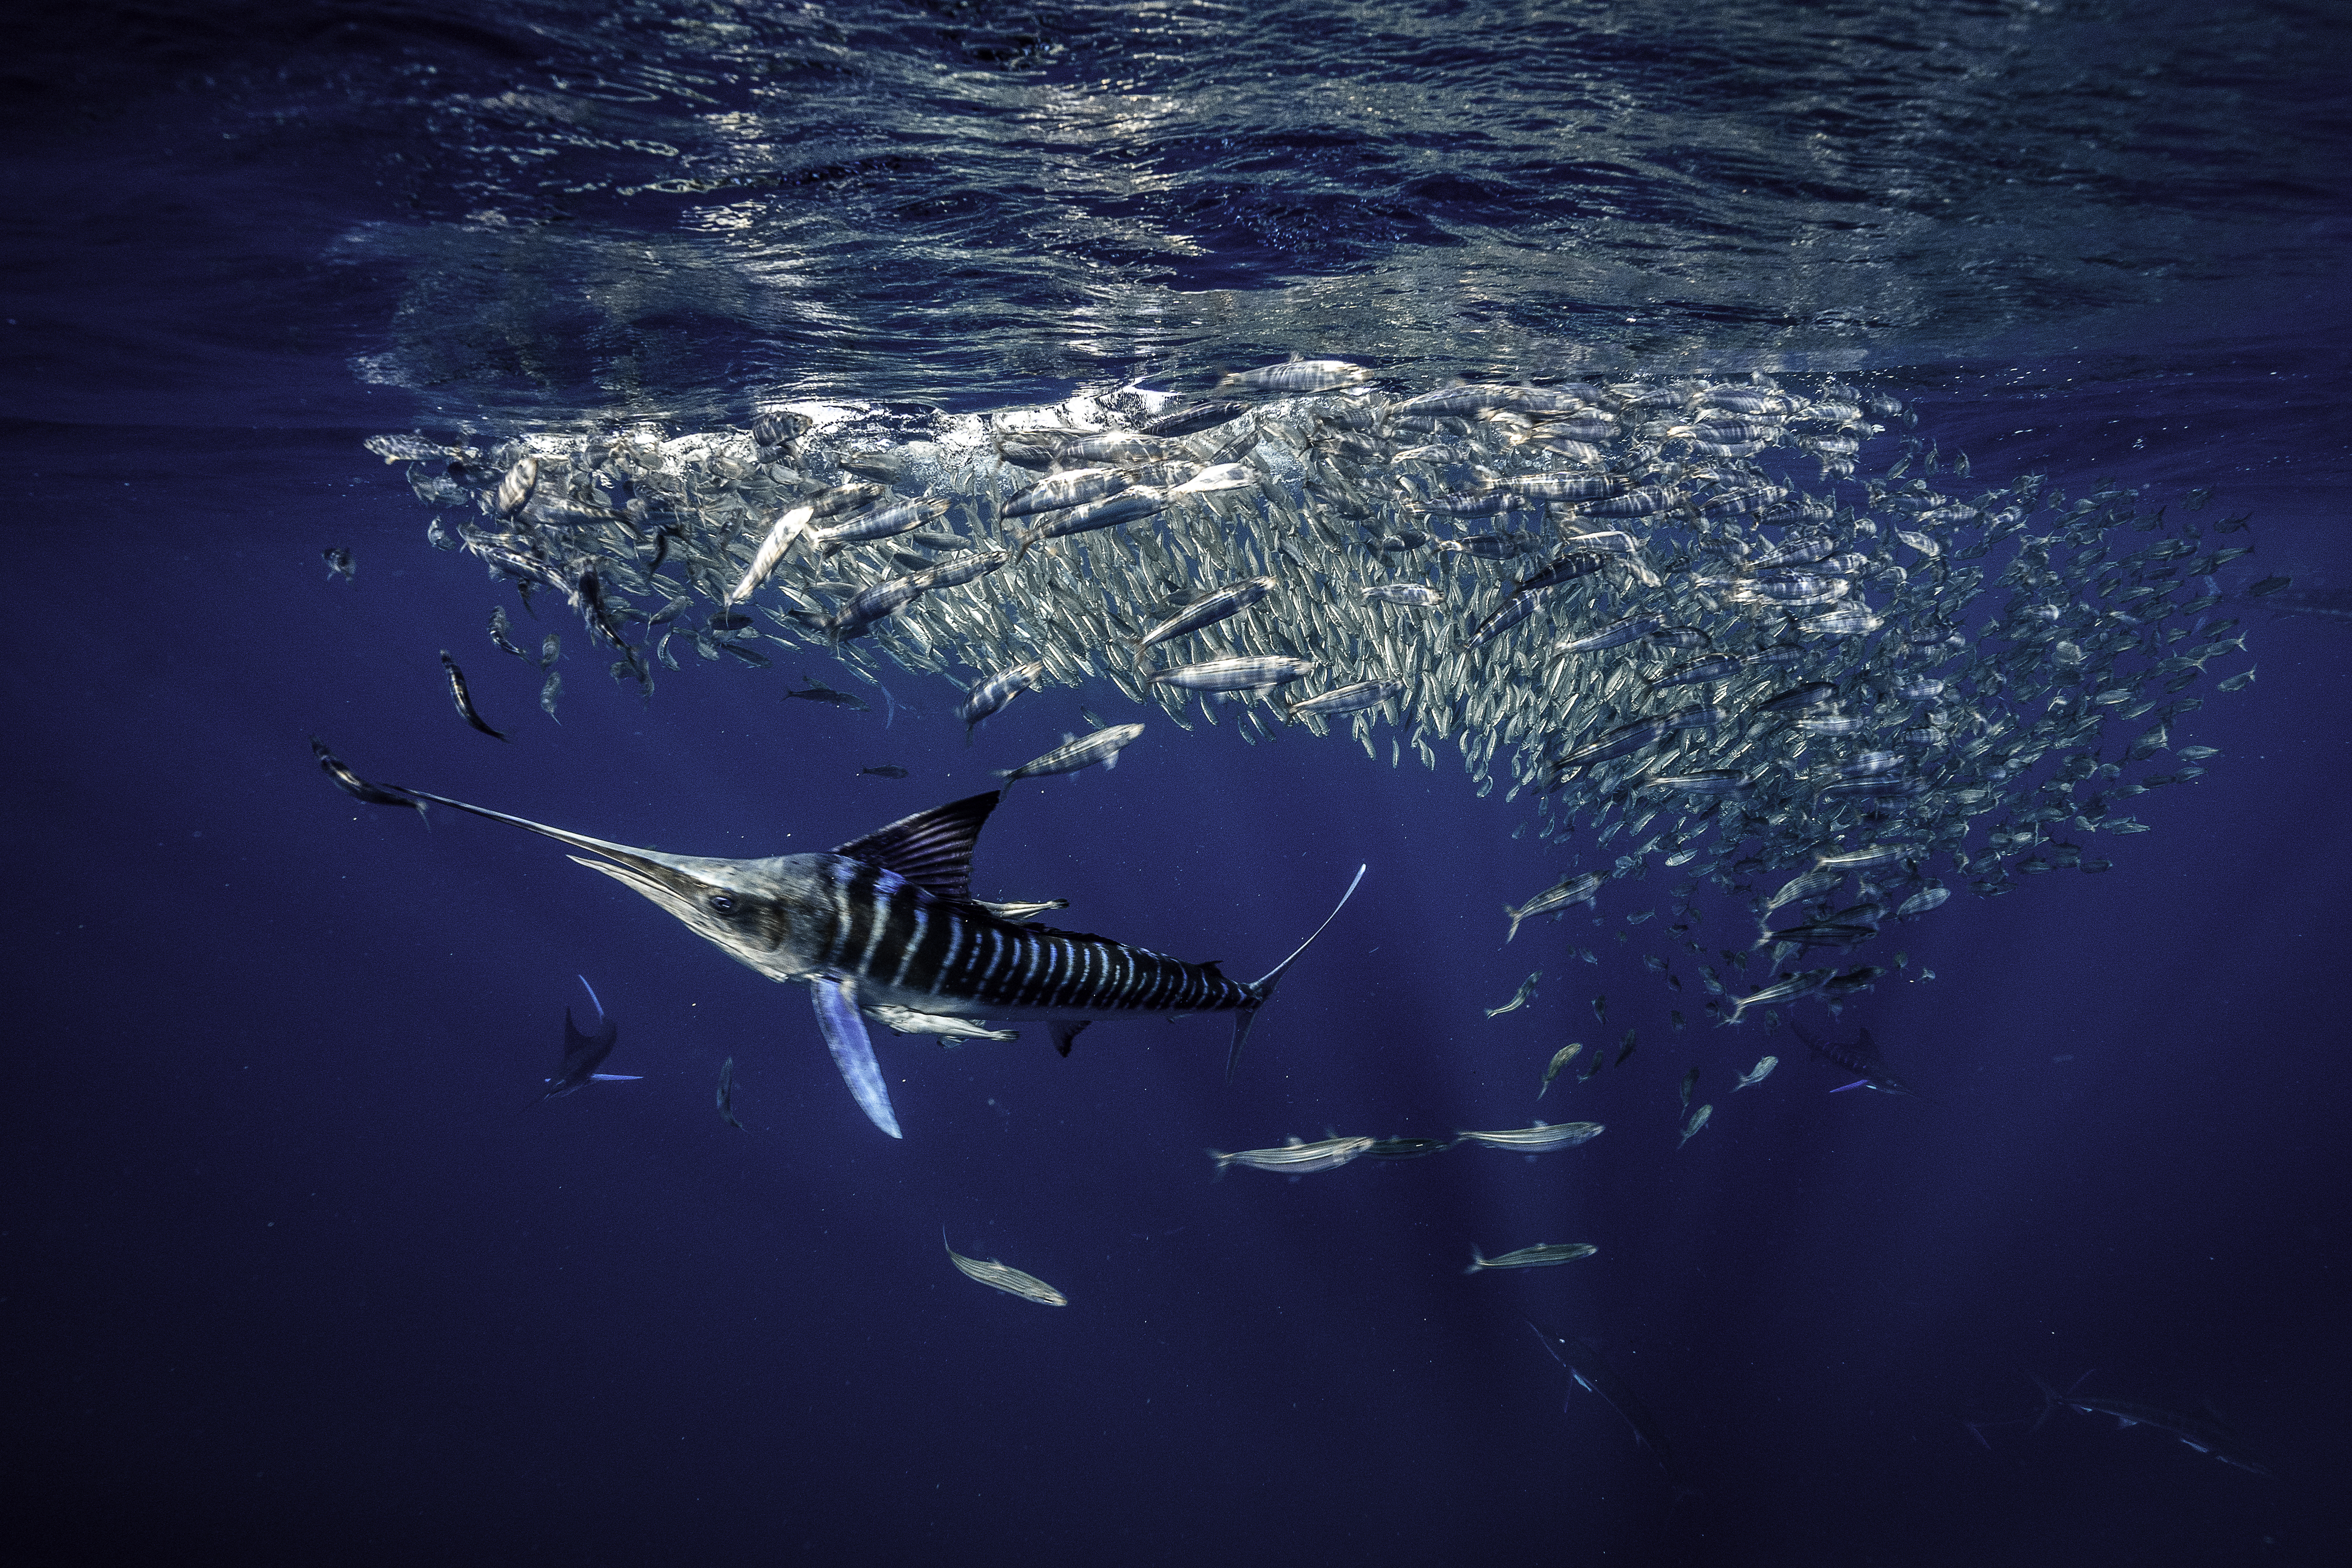 Vive esta experiencia única en mar abierto, con marlins, bolas de sardinas, cetáceos, y mucho más!